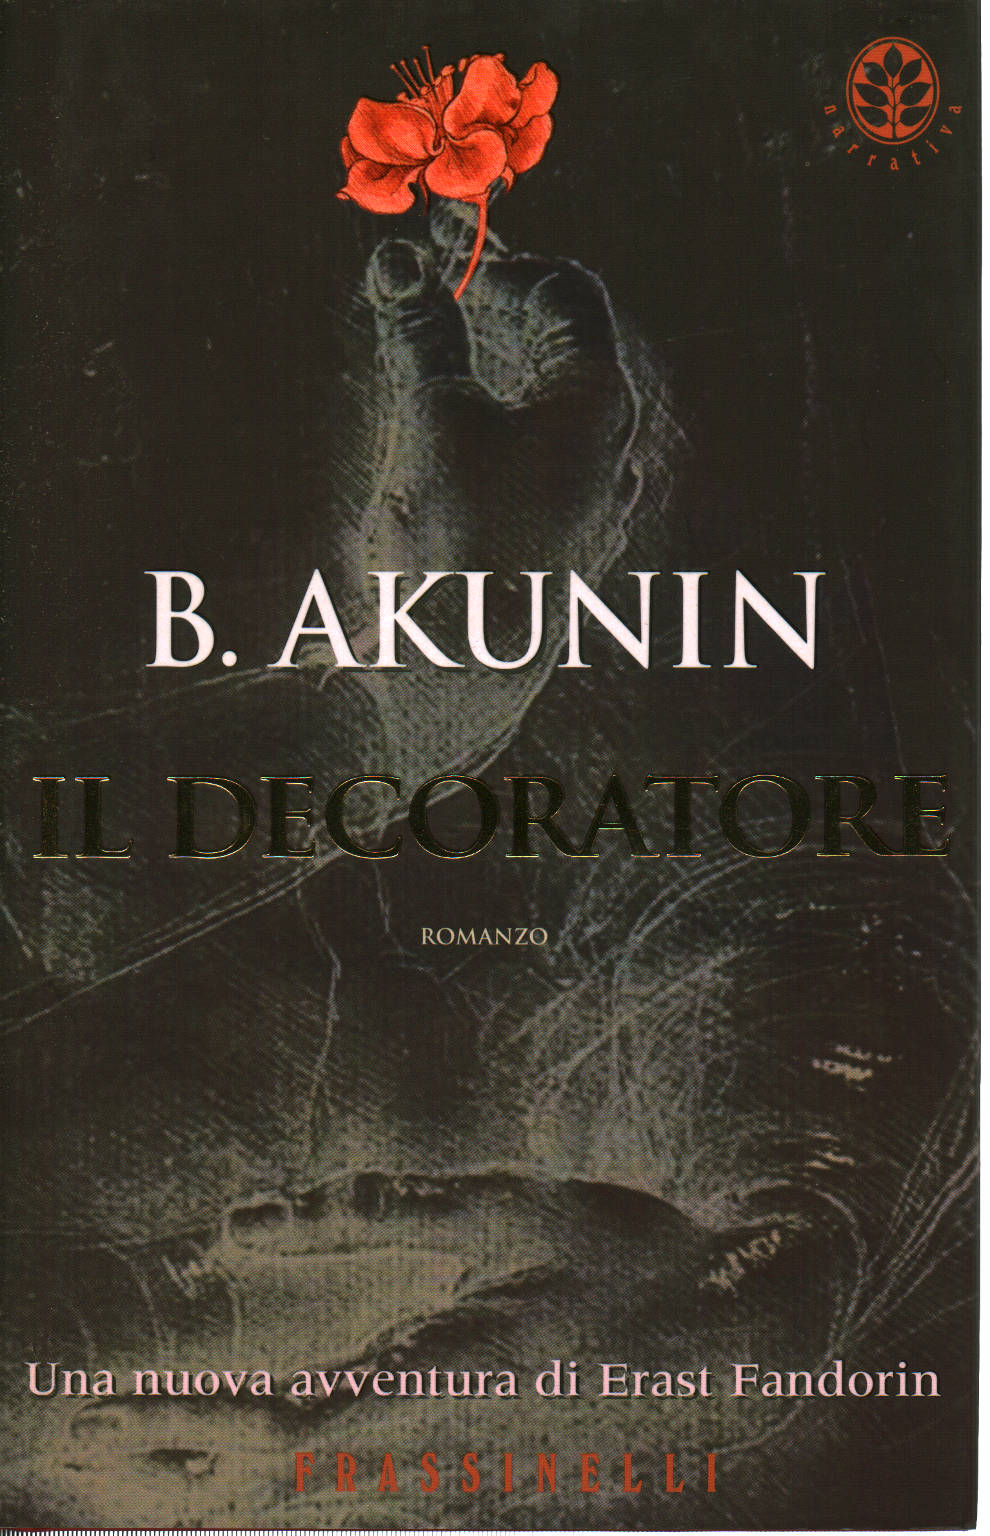 The decorator, B. Akunin